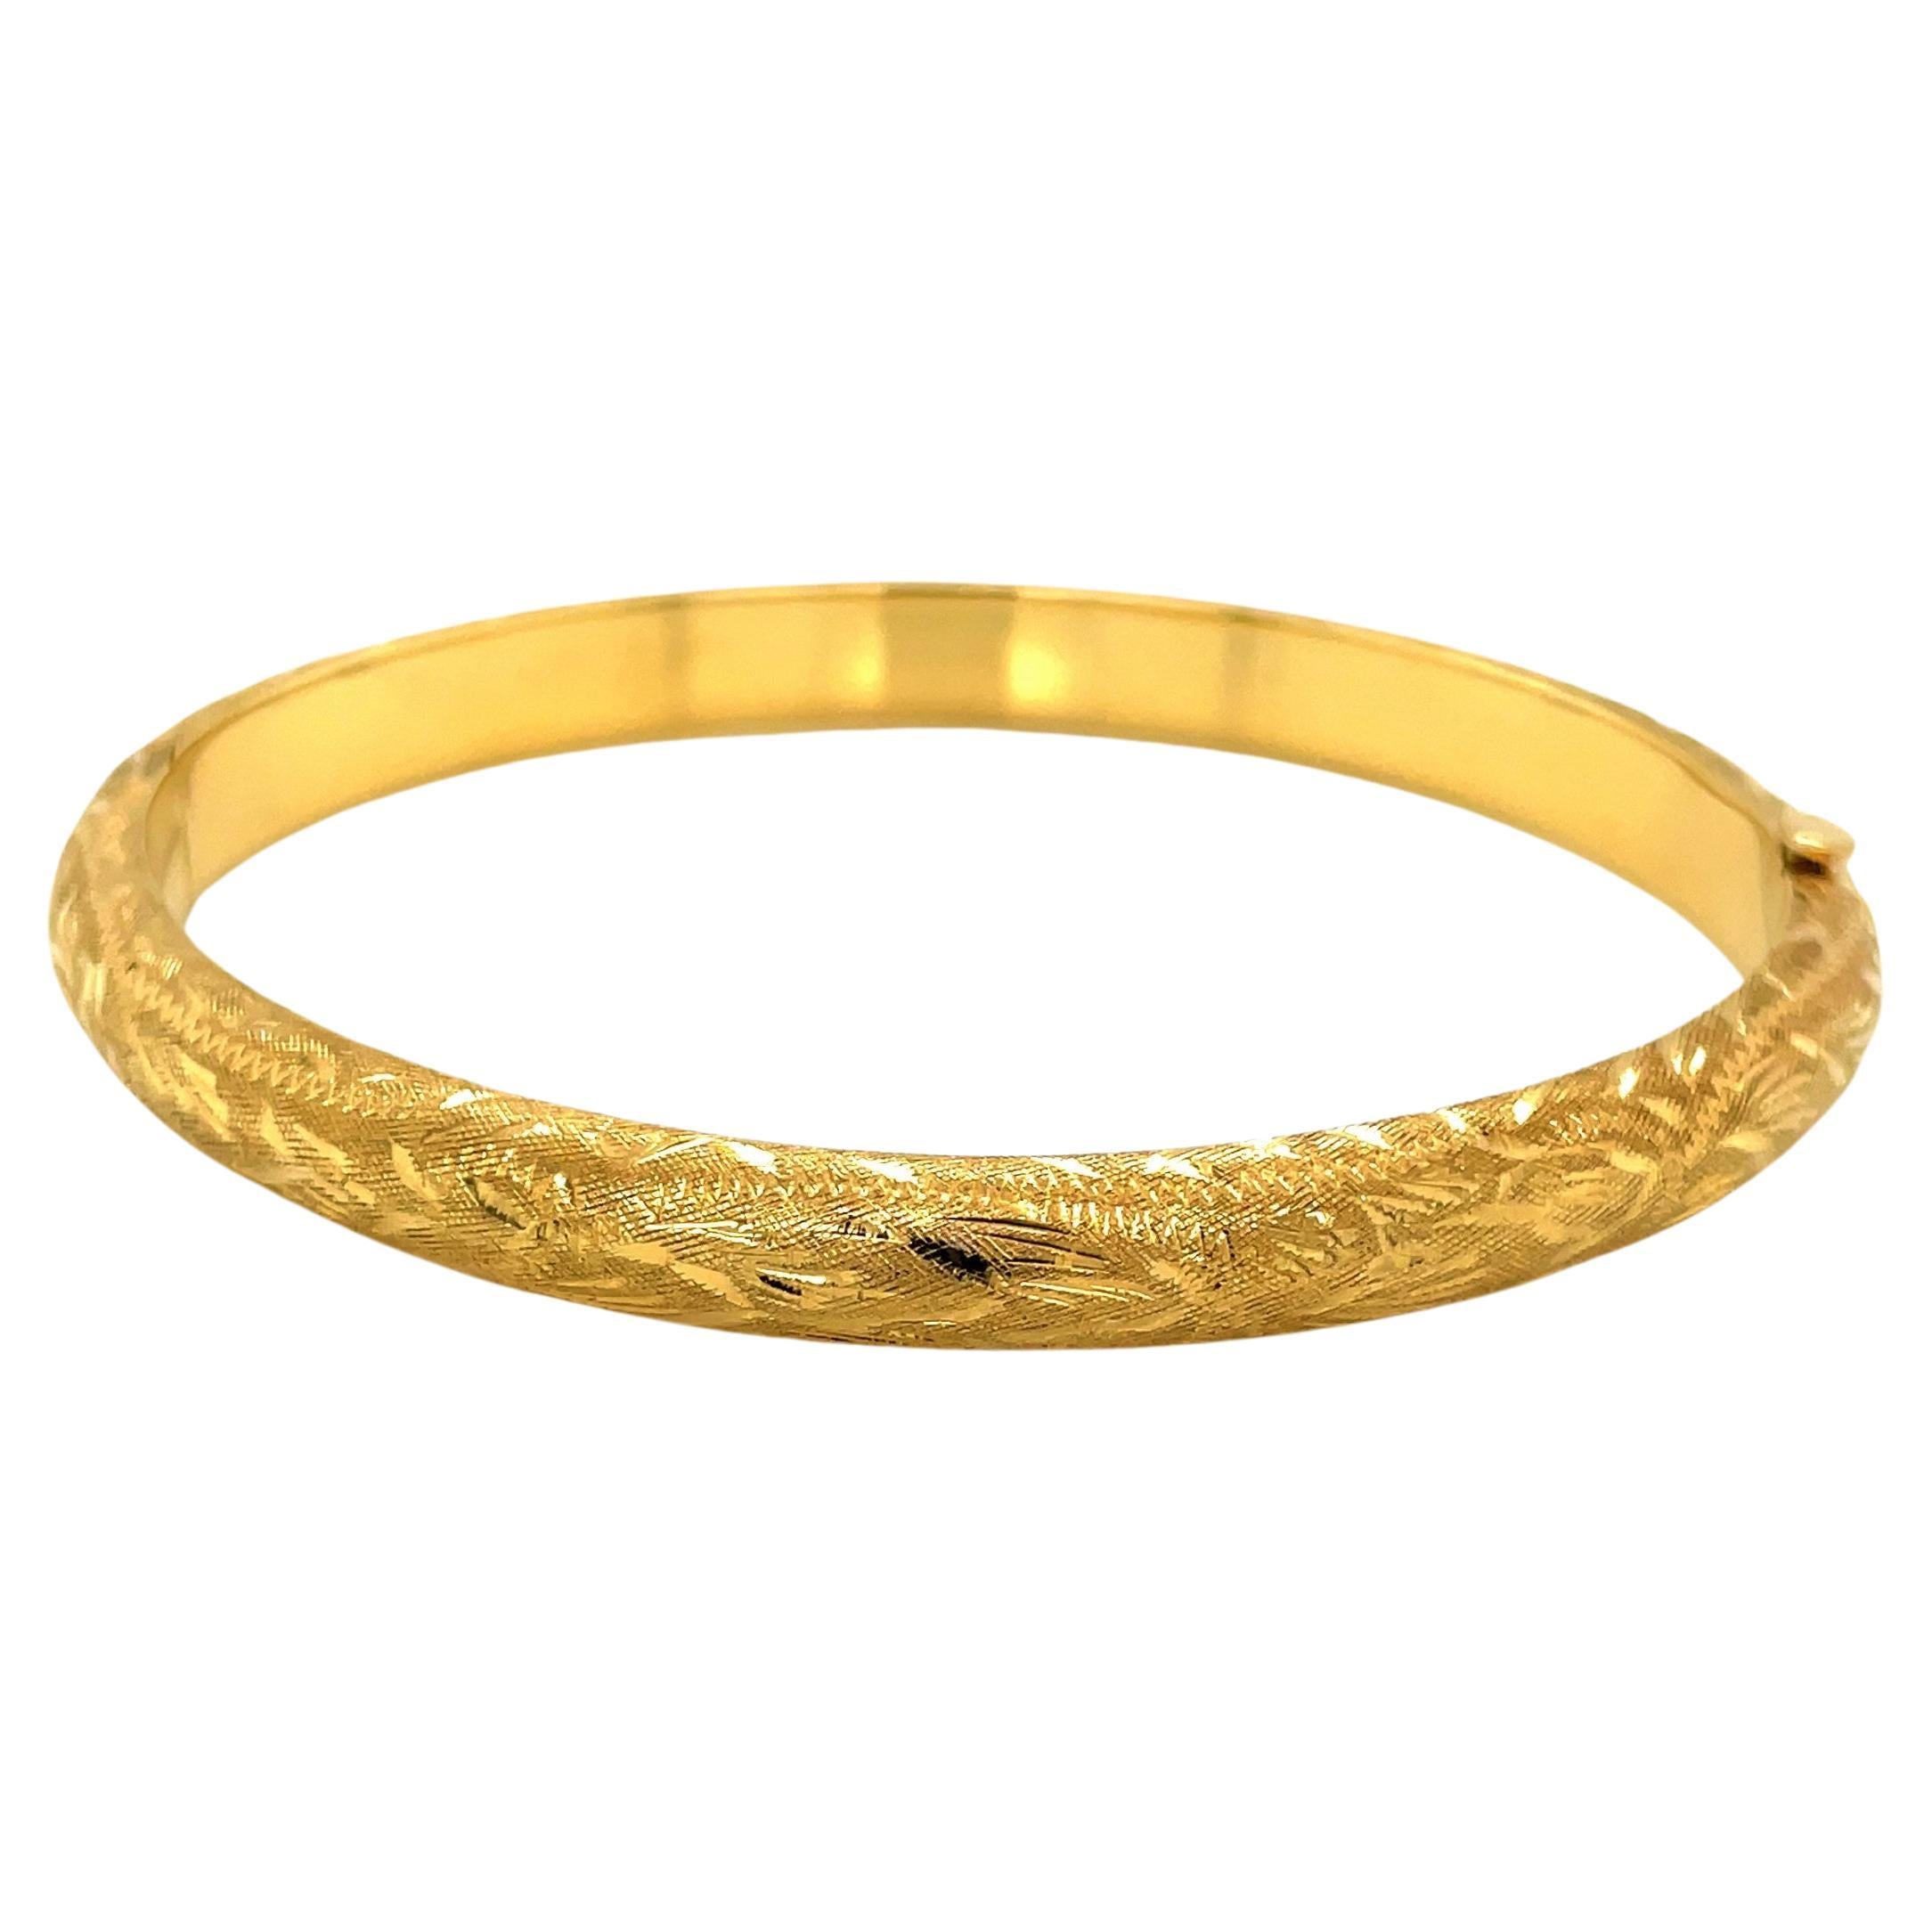 Textured 14 Karat Yellow Gold Hinged Bangle Bracelet